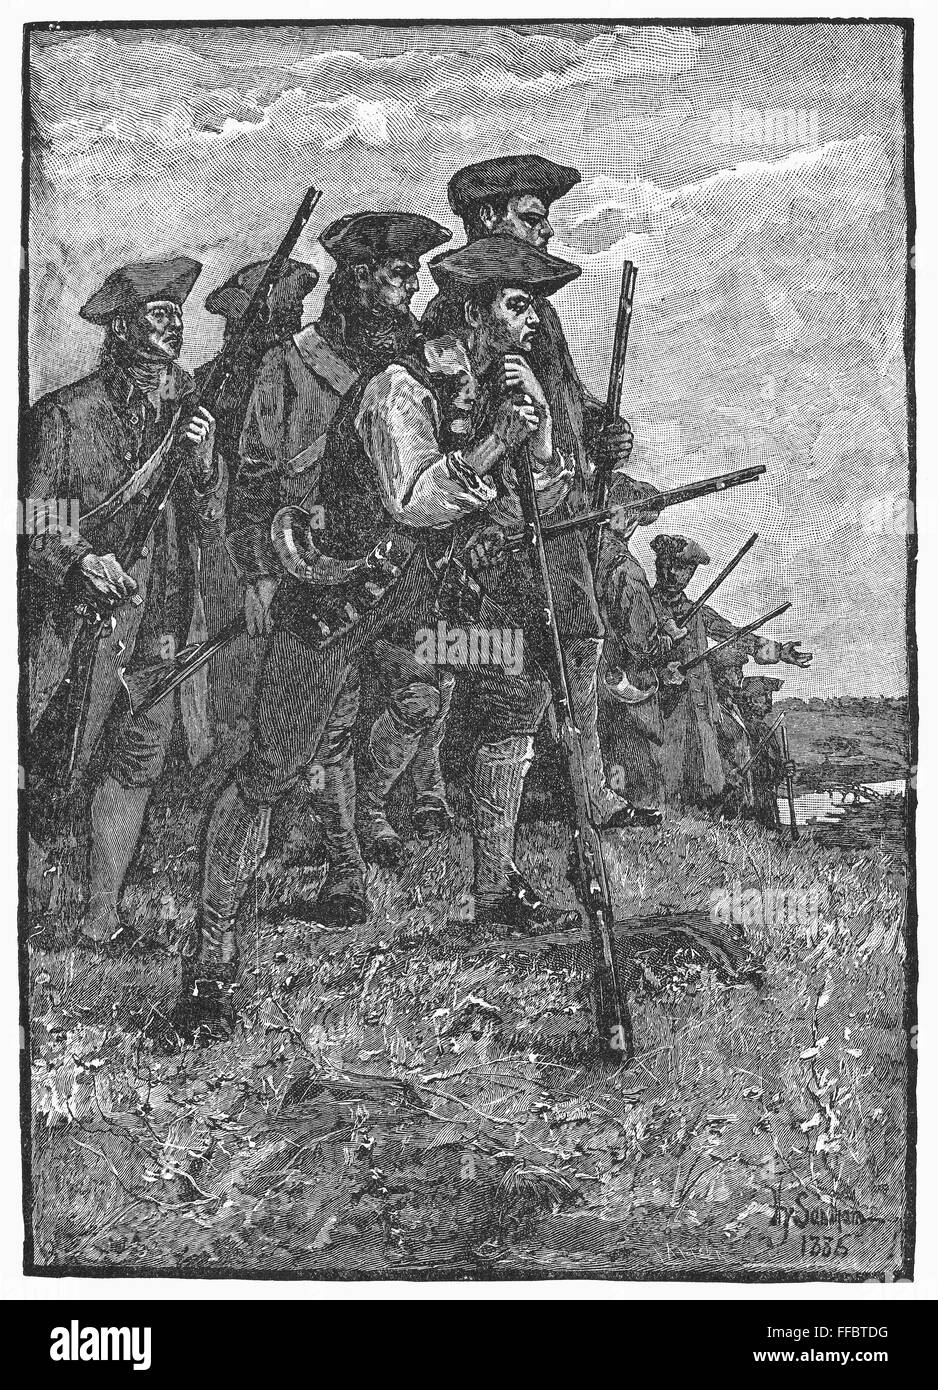 MINUTEMEN, c1776. /NMinutemen della Rivoluzione Americana. Illustrazione, 1885. Foto Stock